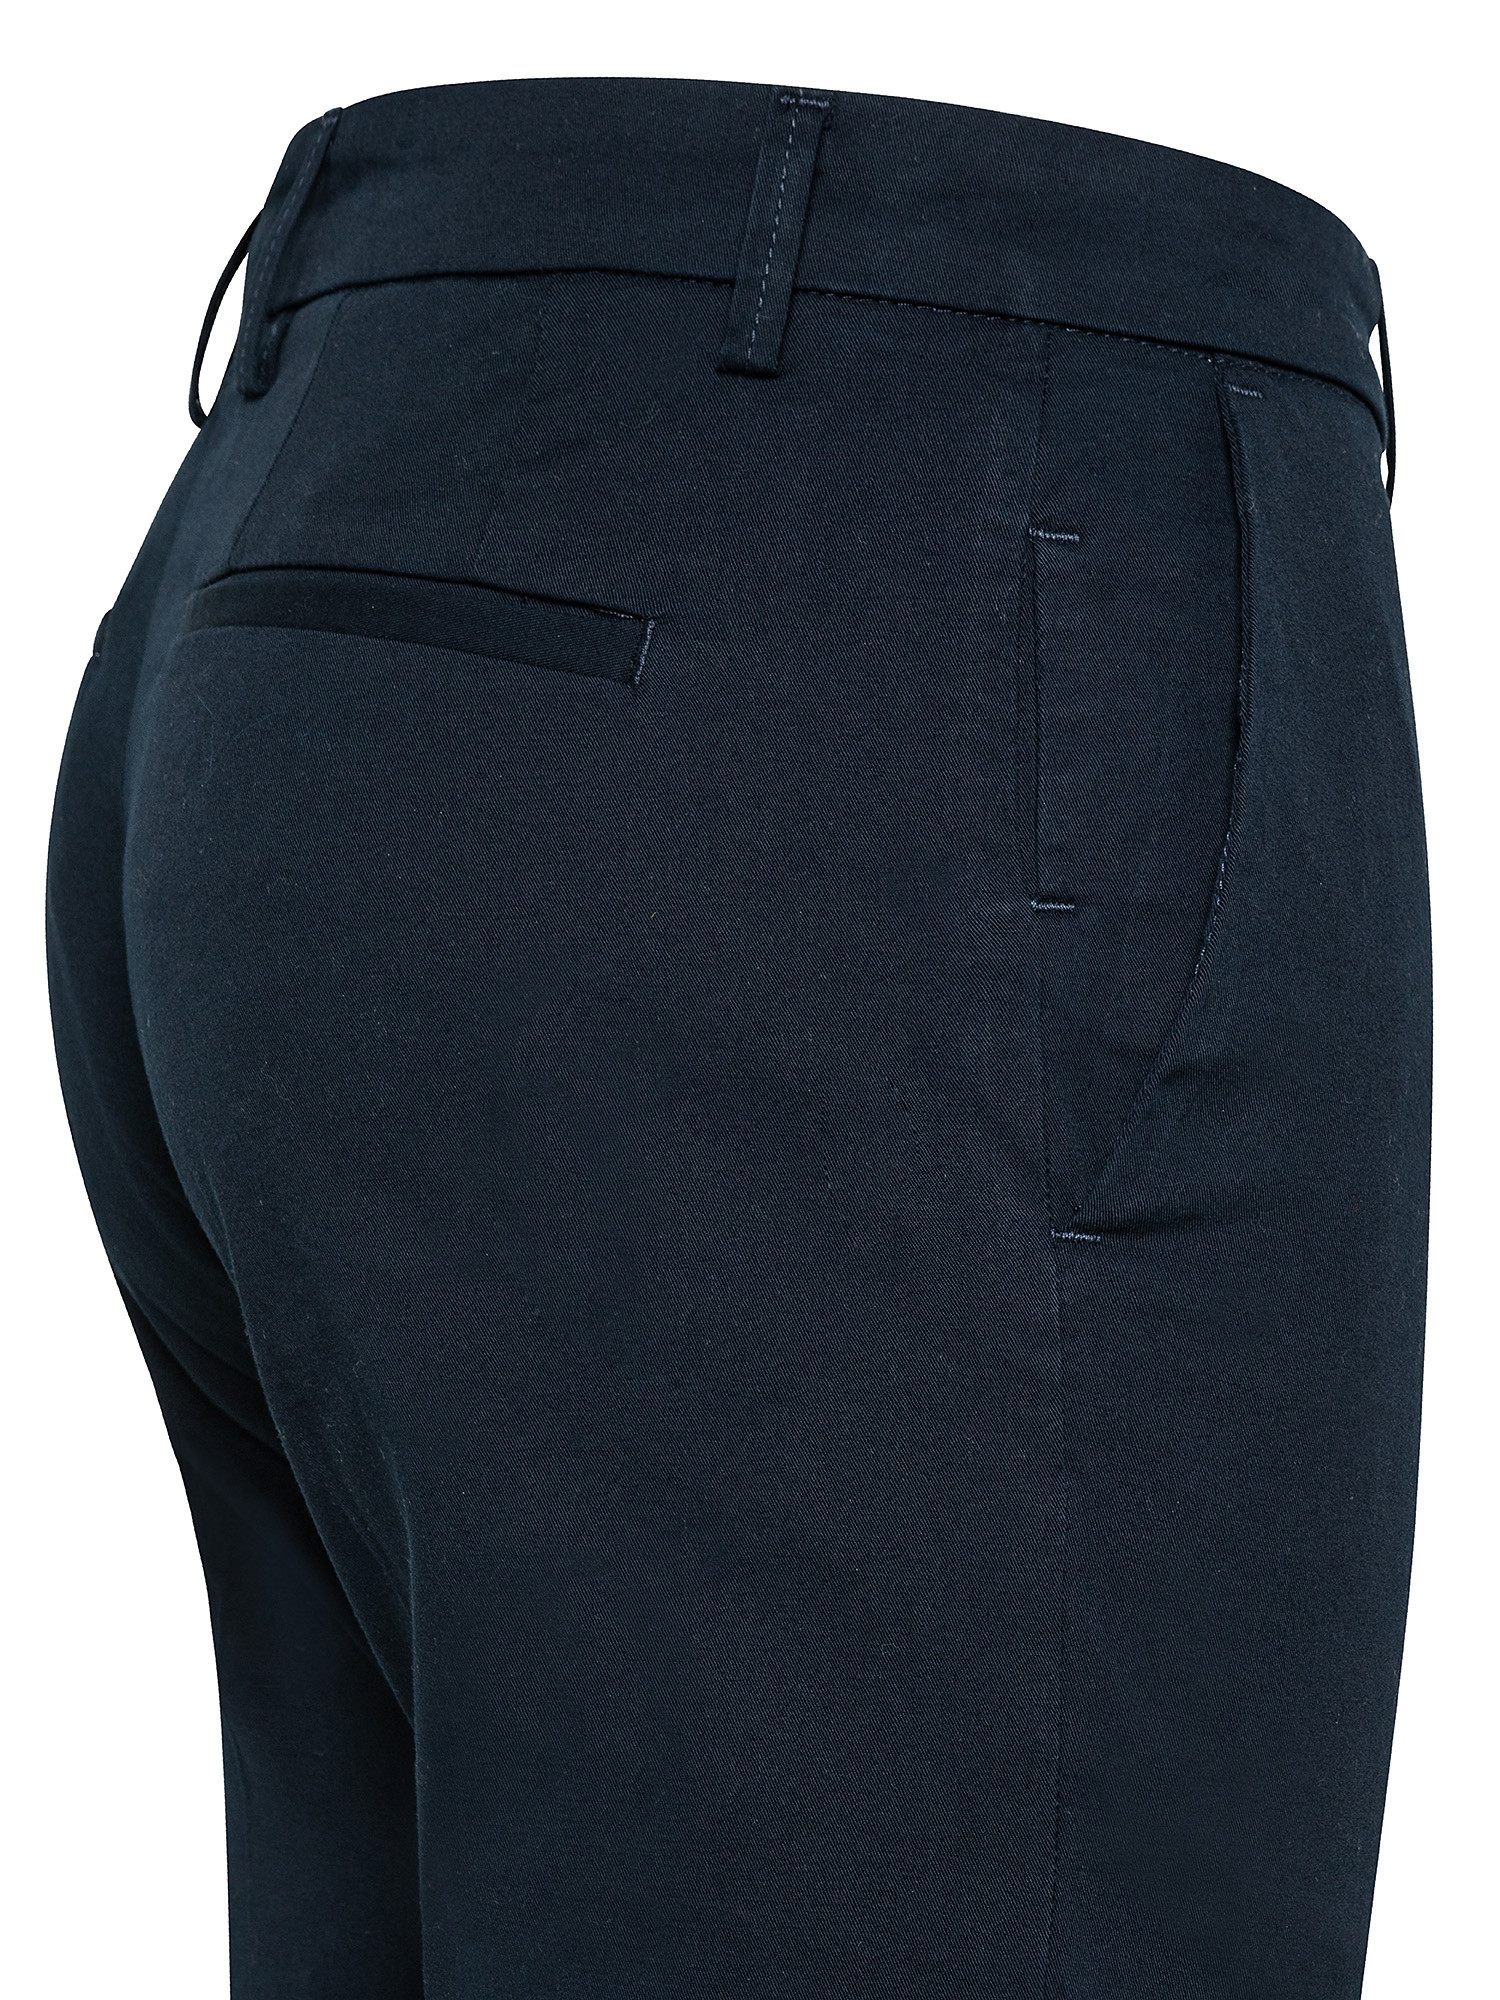 Pantalone chino, Blu, large image number 2